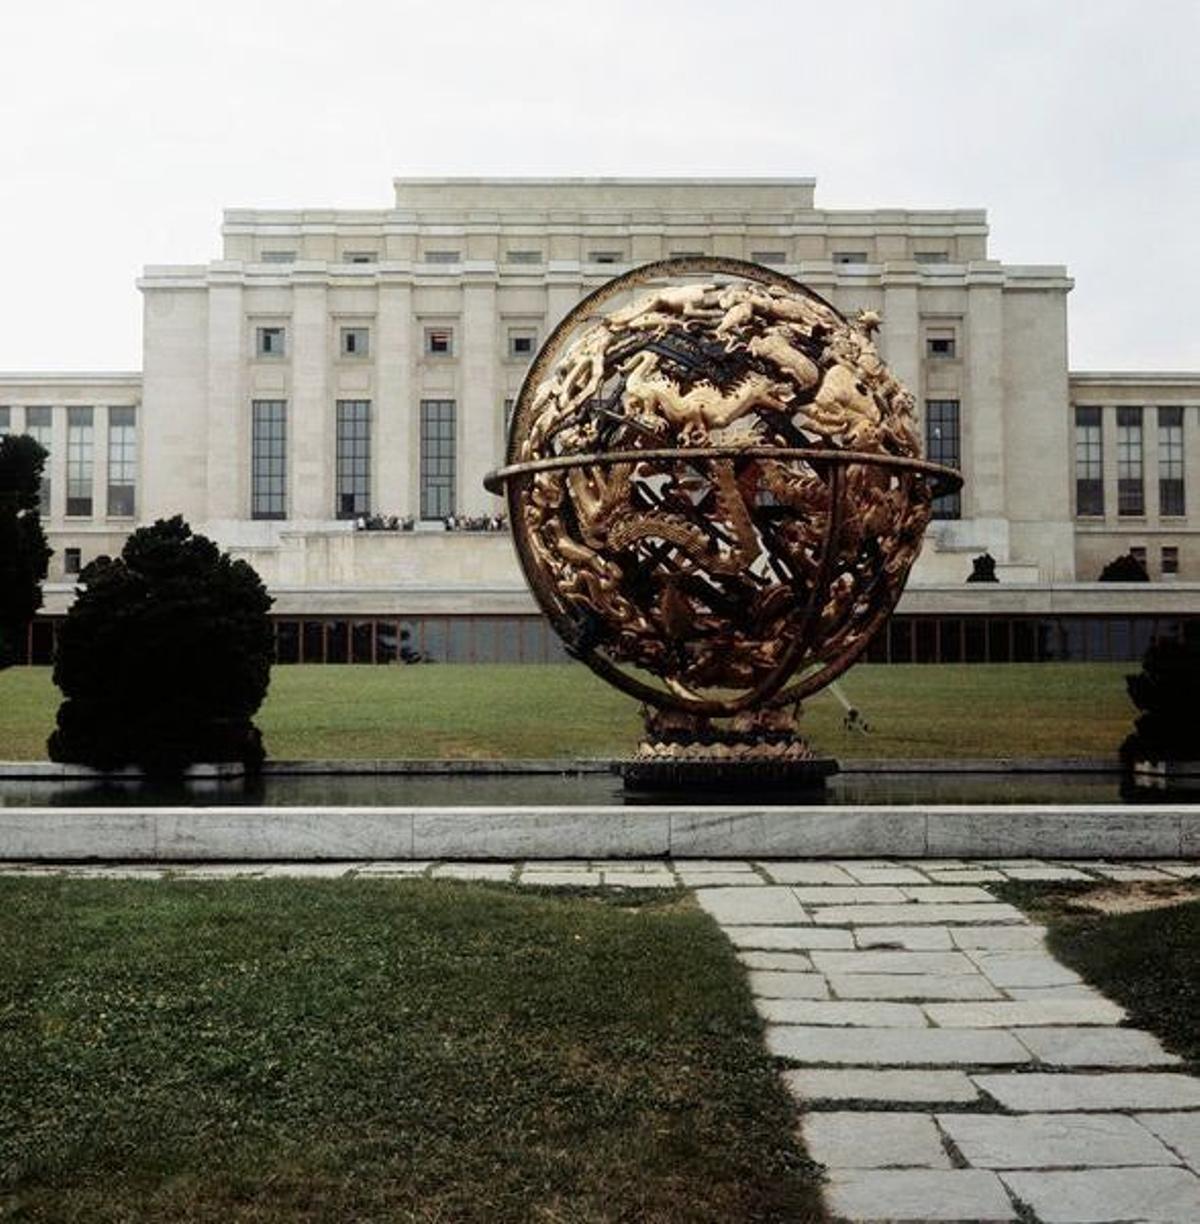 El edificio fue construido entre 1929 y 1936 y es la sede de la Oficina de las Naciones Unidas desde 1946